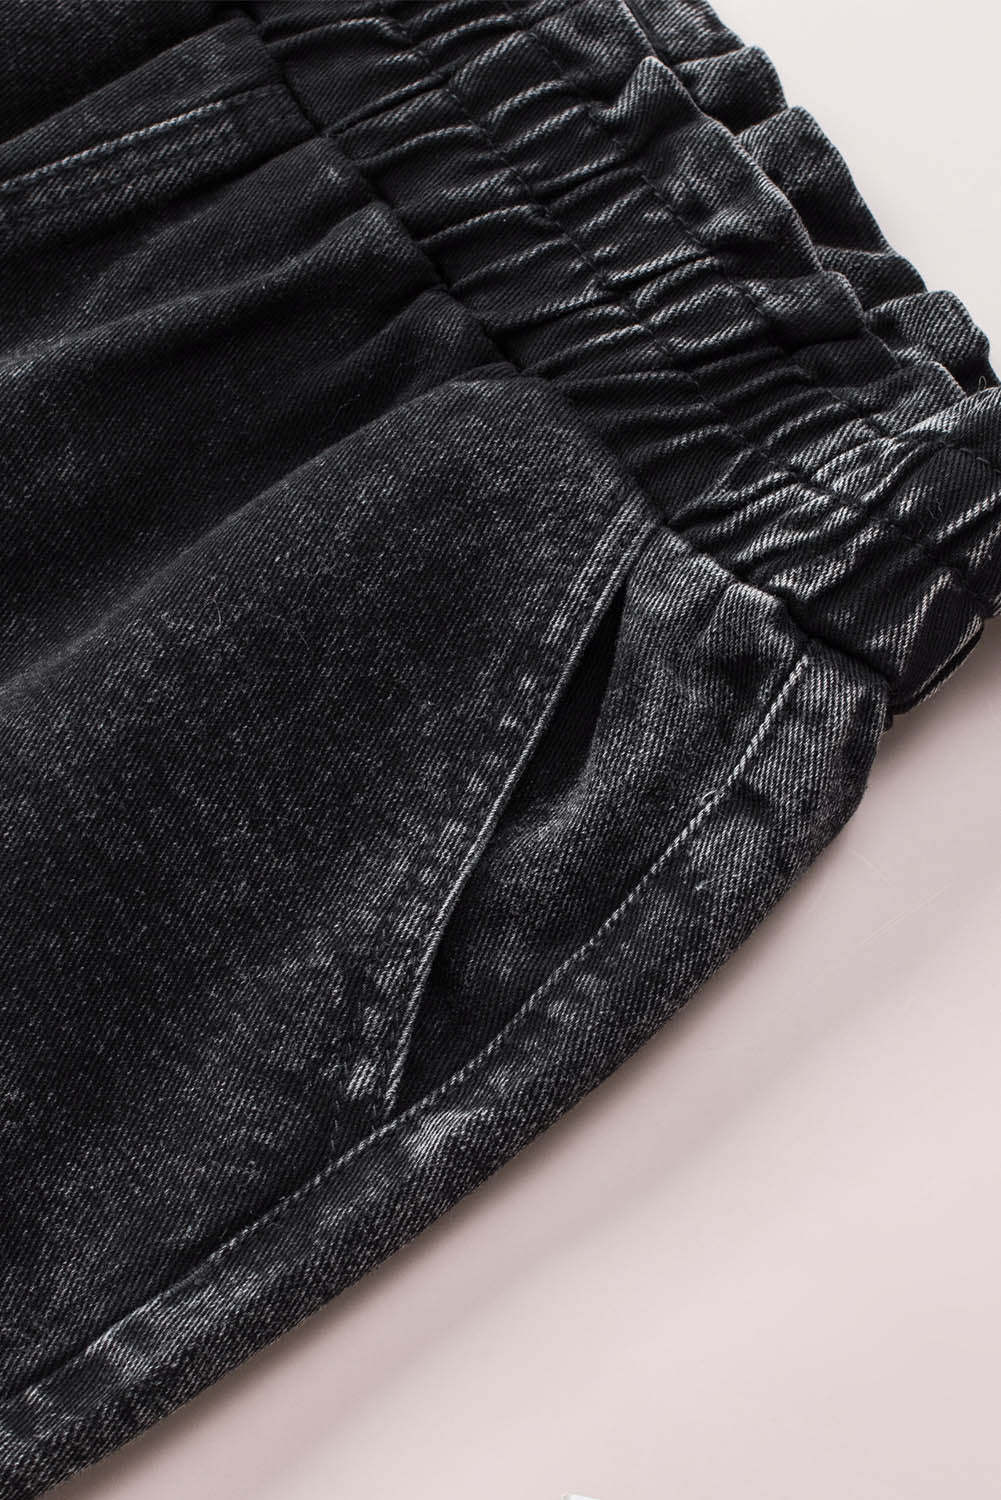 Crne retro kratke traper hlače visokog struka s naborima isprane u izbjeljivaču